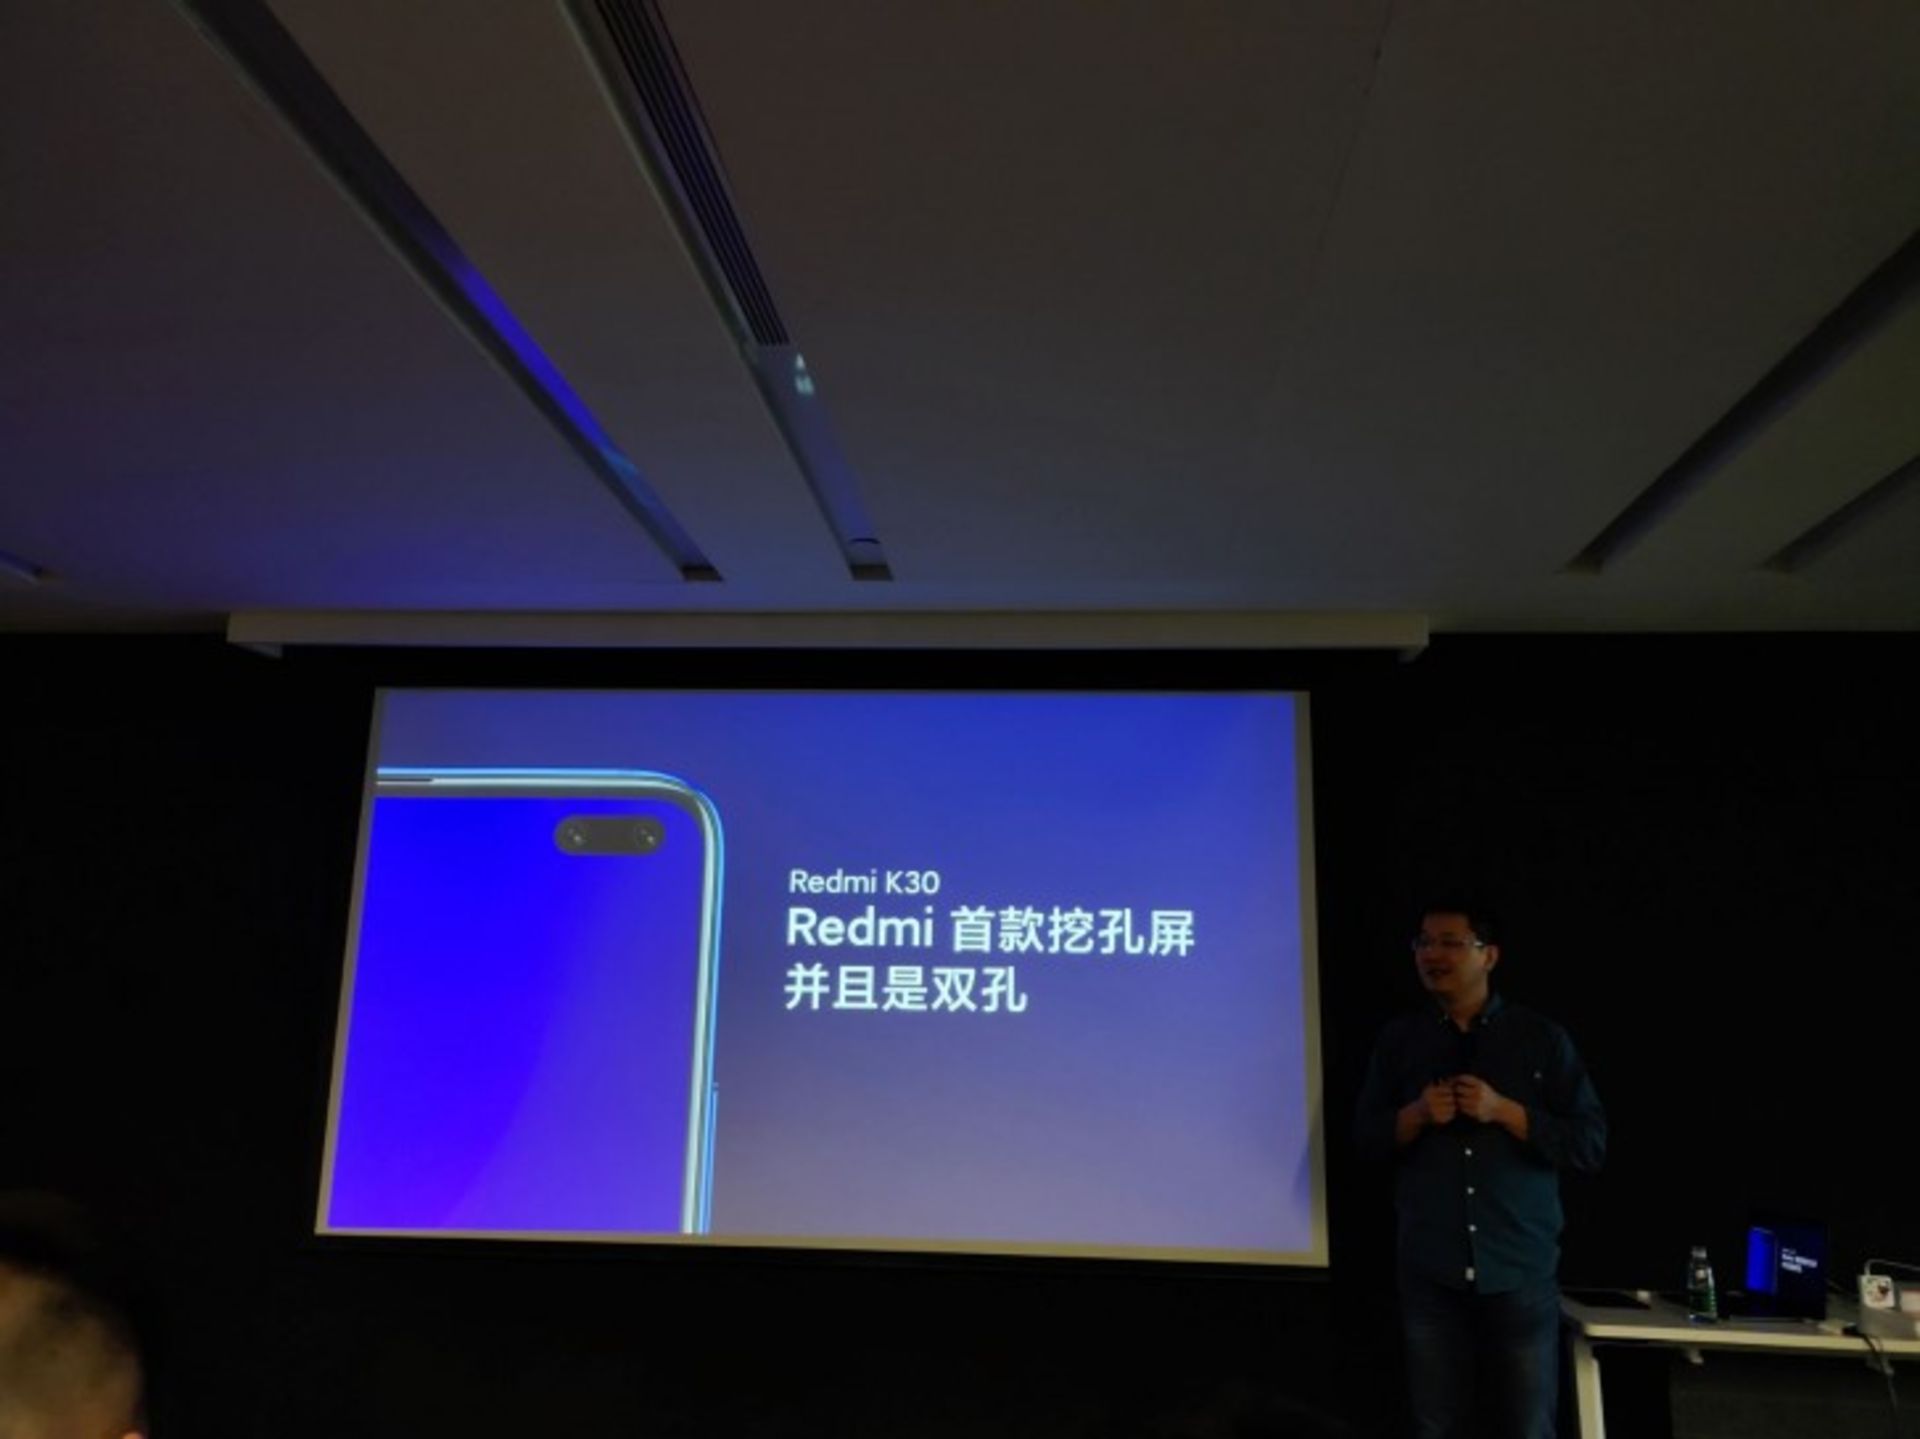 ردمی کی 30 شیائومی / Xiaomi Redmi K30